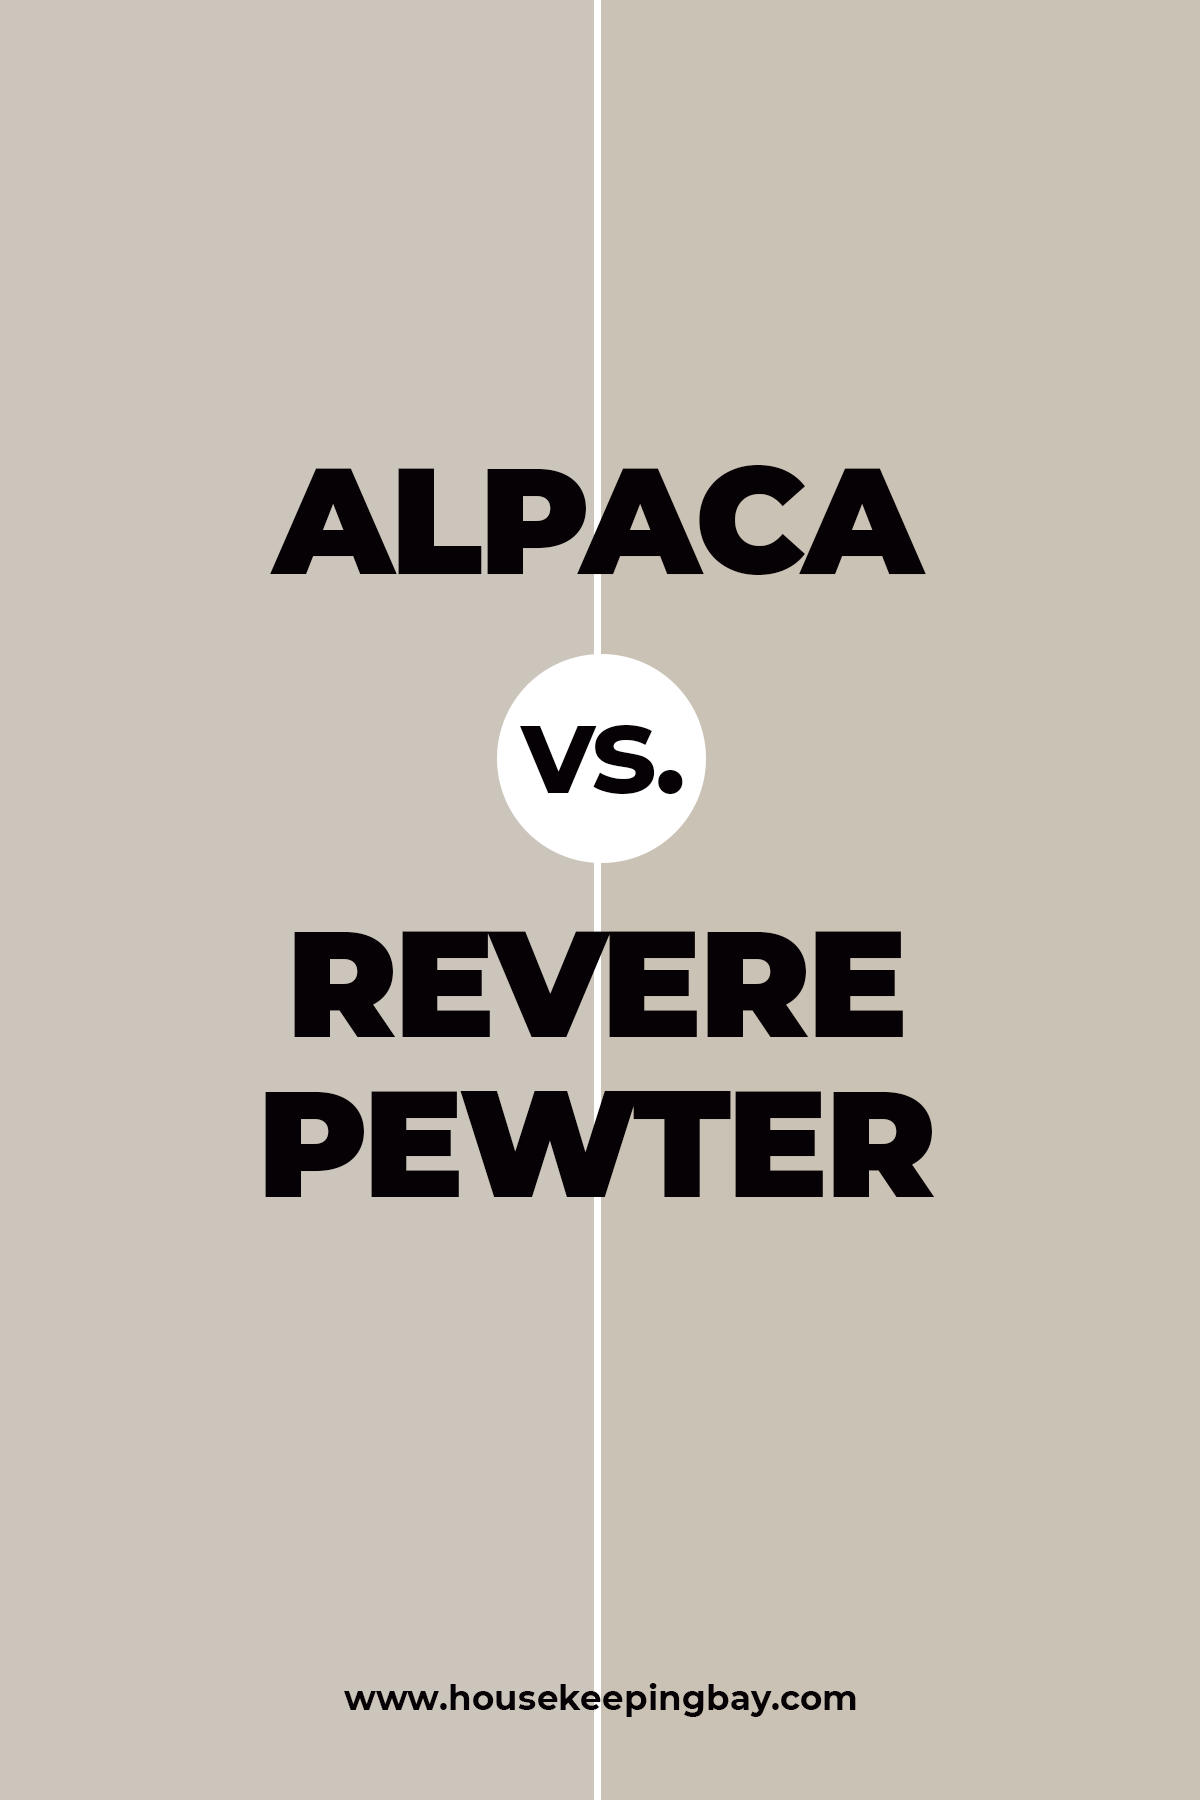 Alpaca vs. Revere Pewter